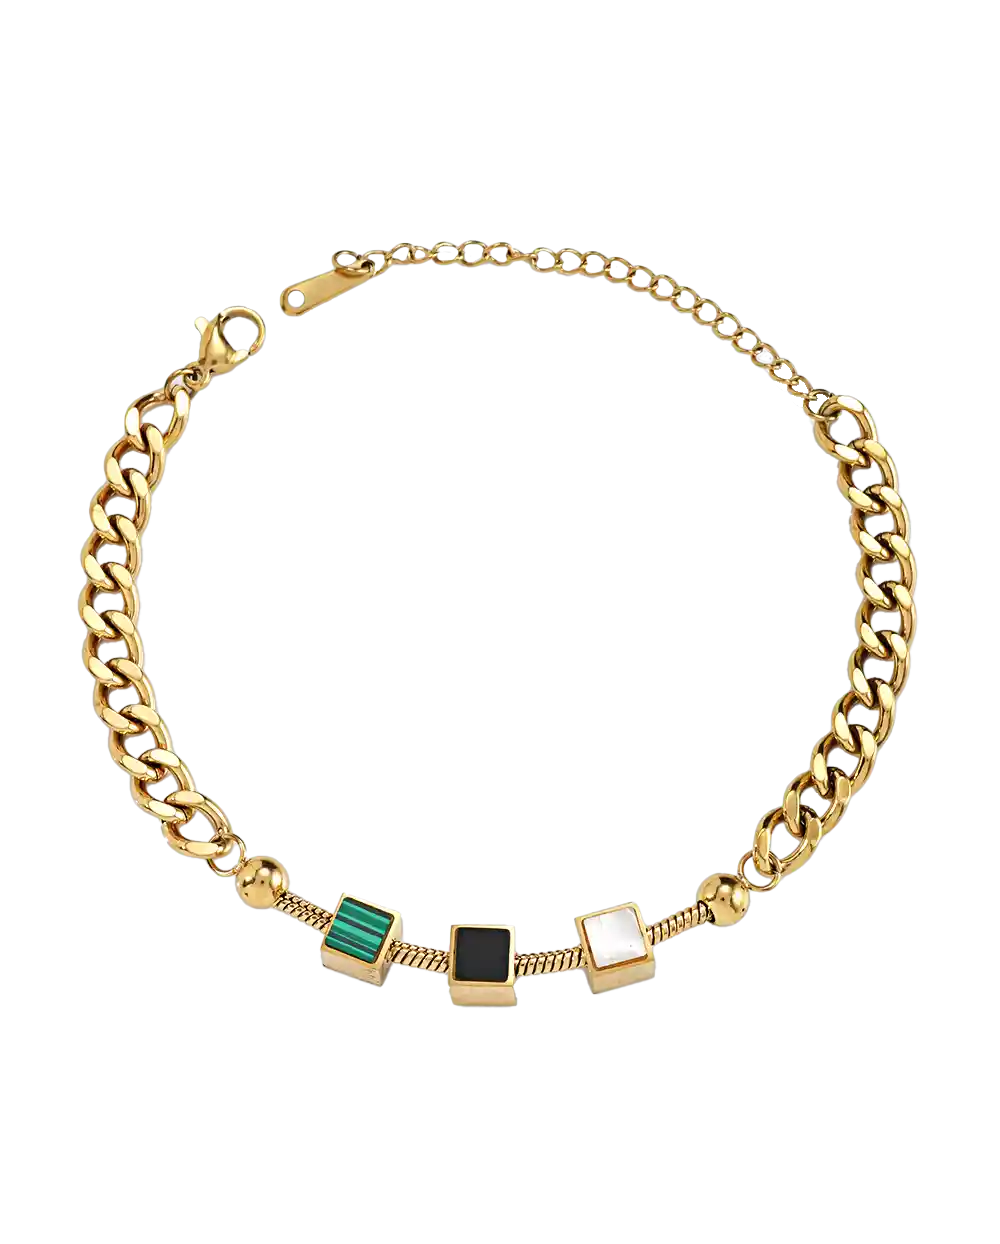 خرید دستبند زنجیری صدفی زنانه مدل 1858 رنگ طلایی با سنگ زمردی قیمت 230 هزارتومان به همراه ارسال رایگان به سراسر ایران و جعبه ی شکیل